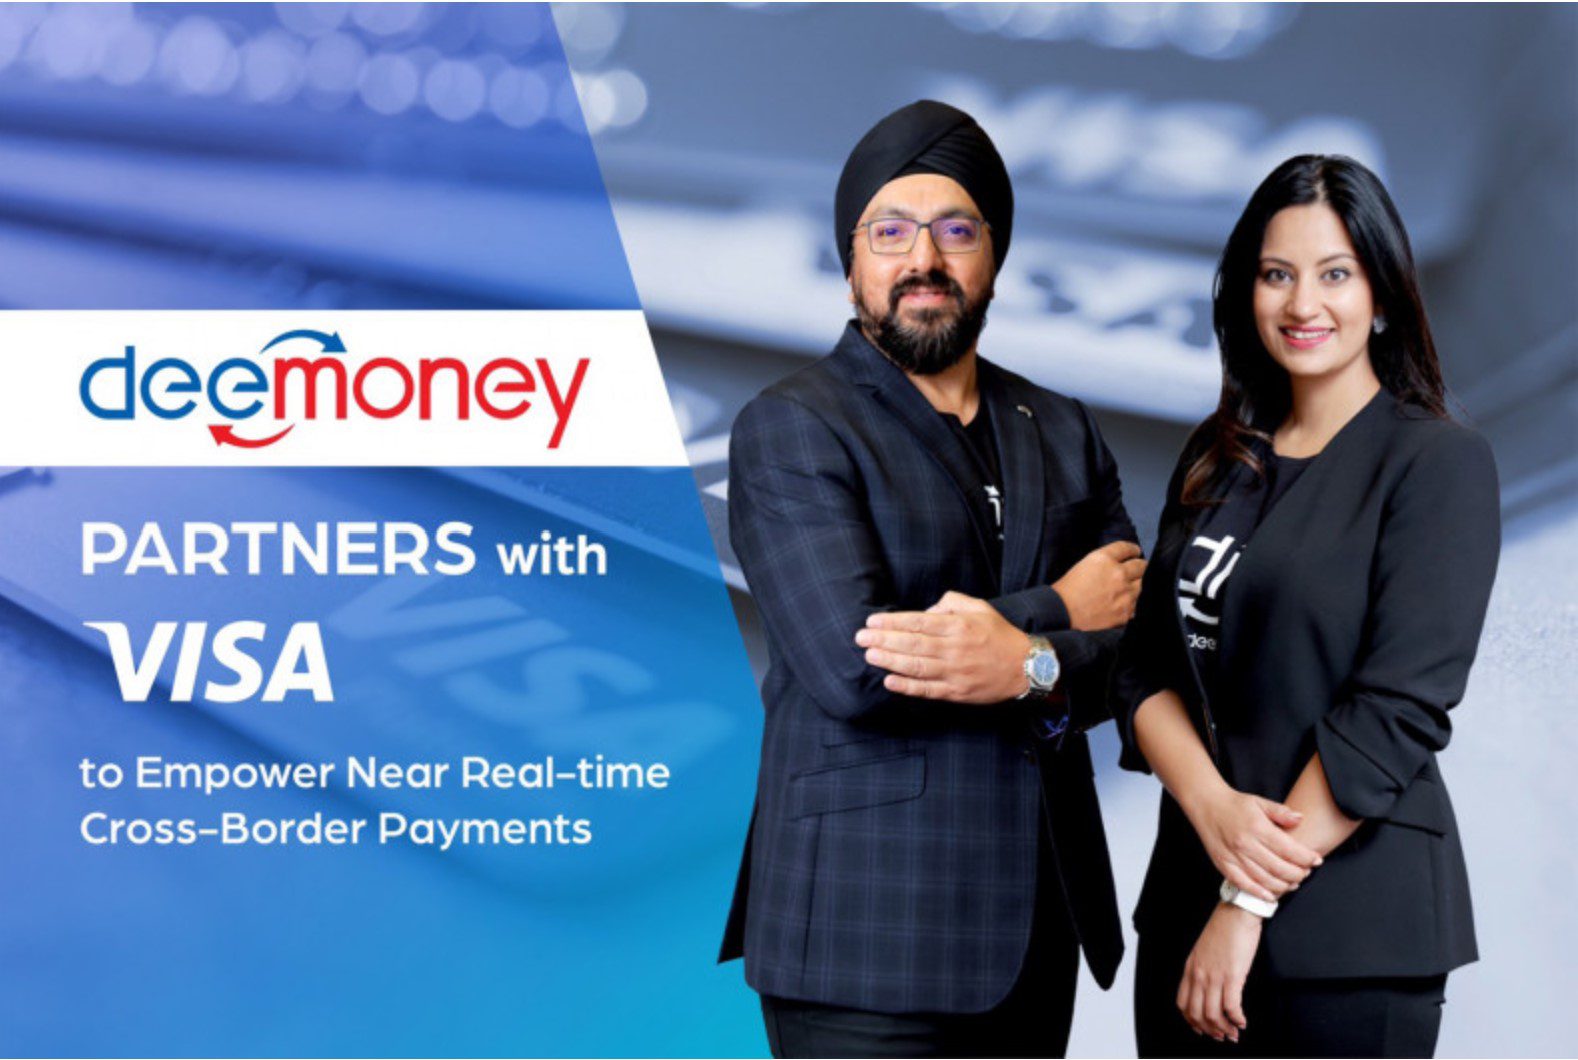 Ein Plakat, dass die Ripple News über die Partnerschaft zwischen DeeMoney und Visa verkündet